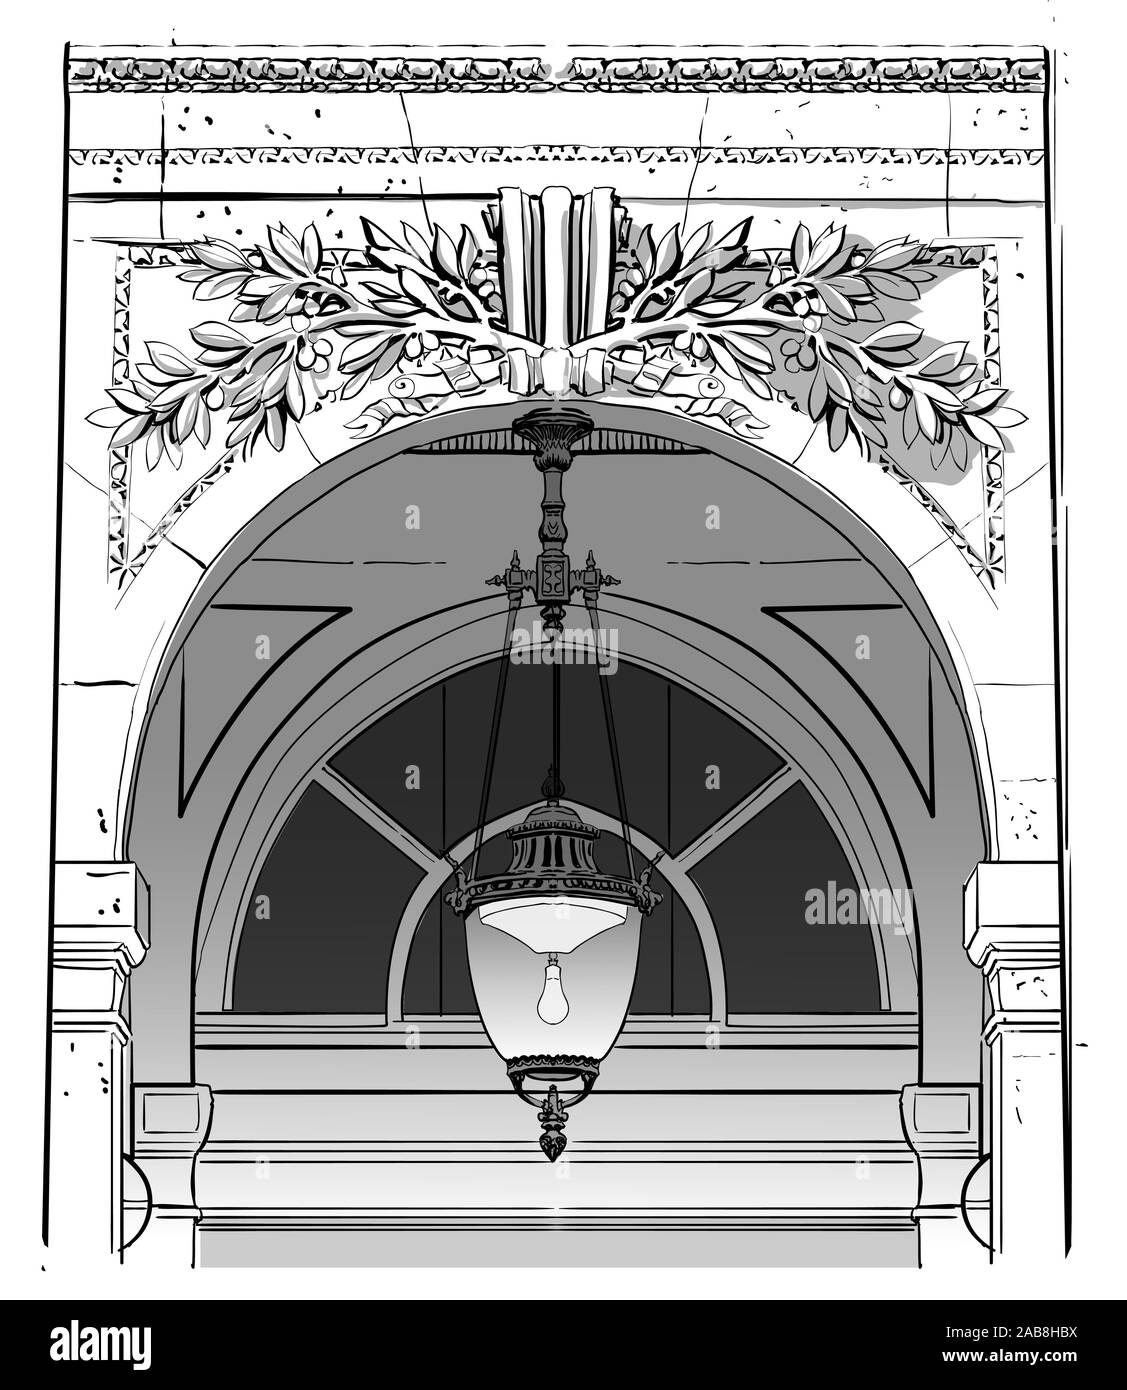 Vecchia facciata e lampione - illustrazione vettoriale (ideale per la stampa su tessuto o carta, poster o di sfondo, la decorazione della casa) Illustrazione Vettoriale